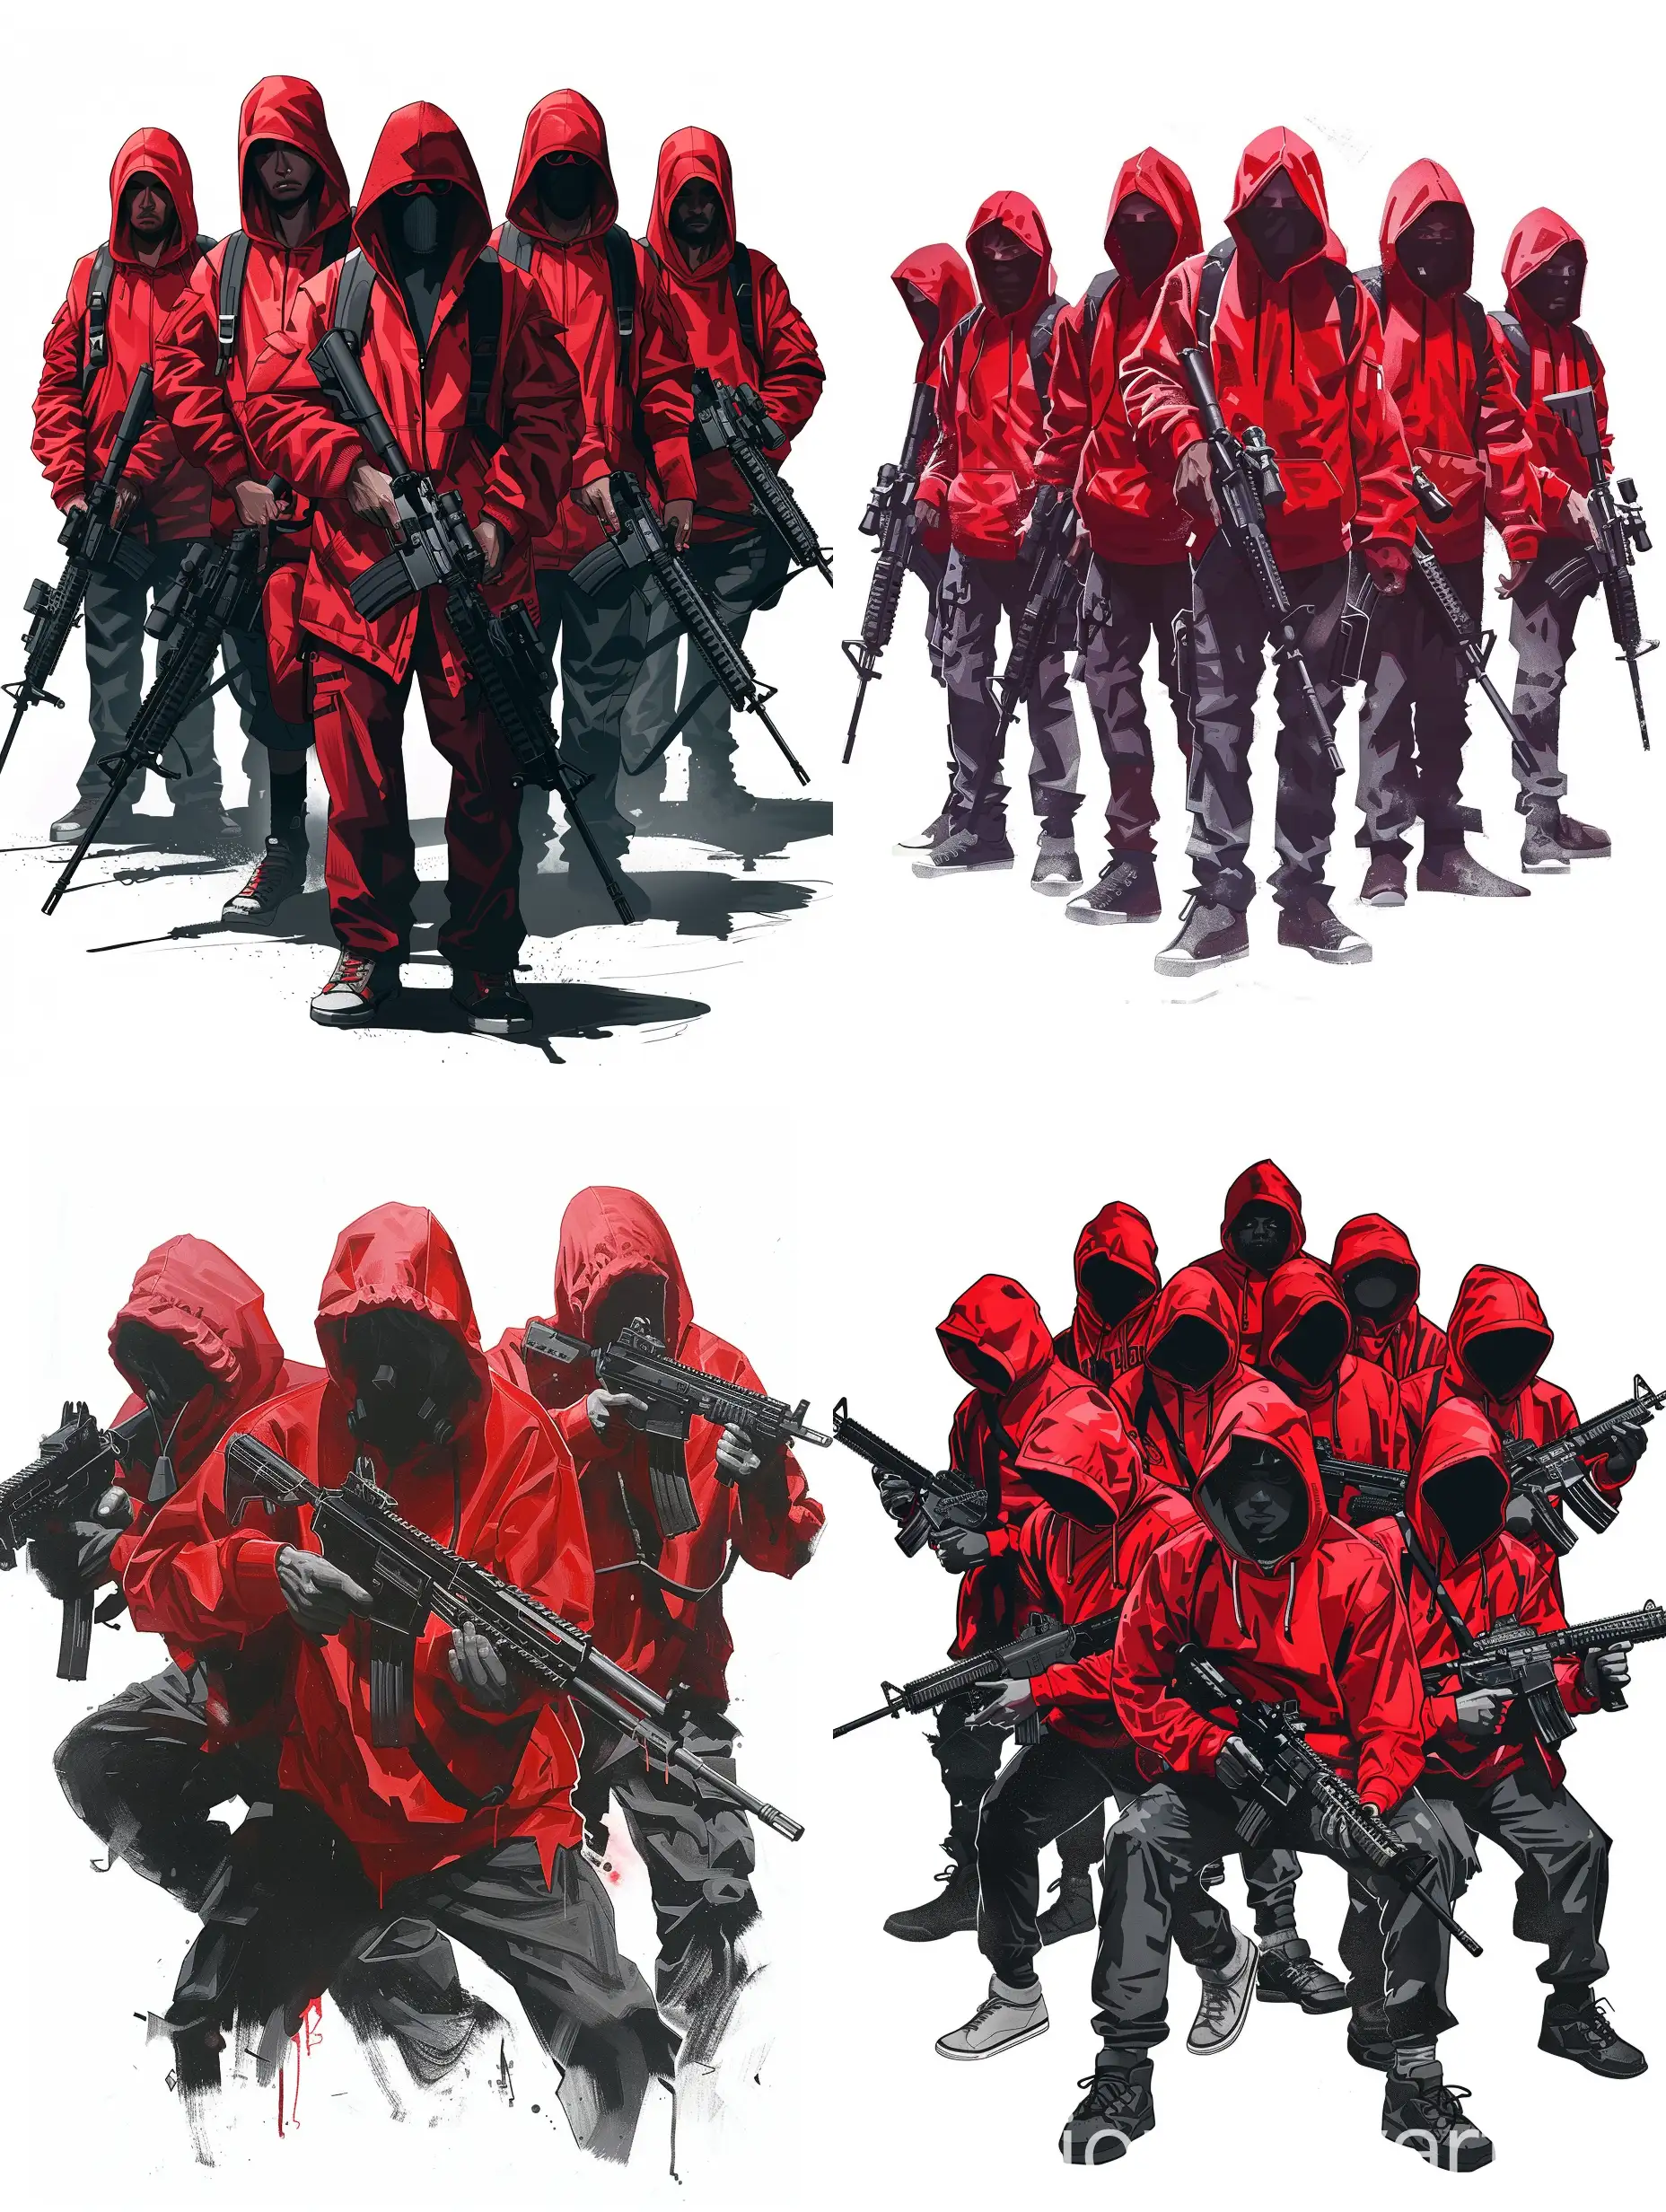 Нарисуй рисунок группу людей в красной толстовке и черных штанах с оружием в руках. Рисунок должен быть в стиле компьютерной игры ГТА 5. Строго белый фон!